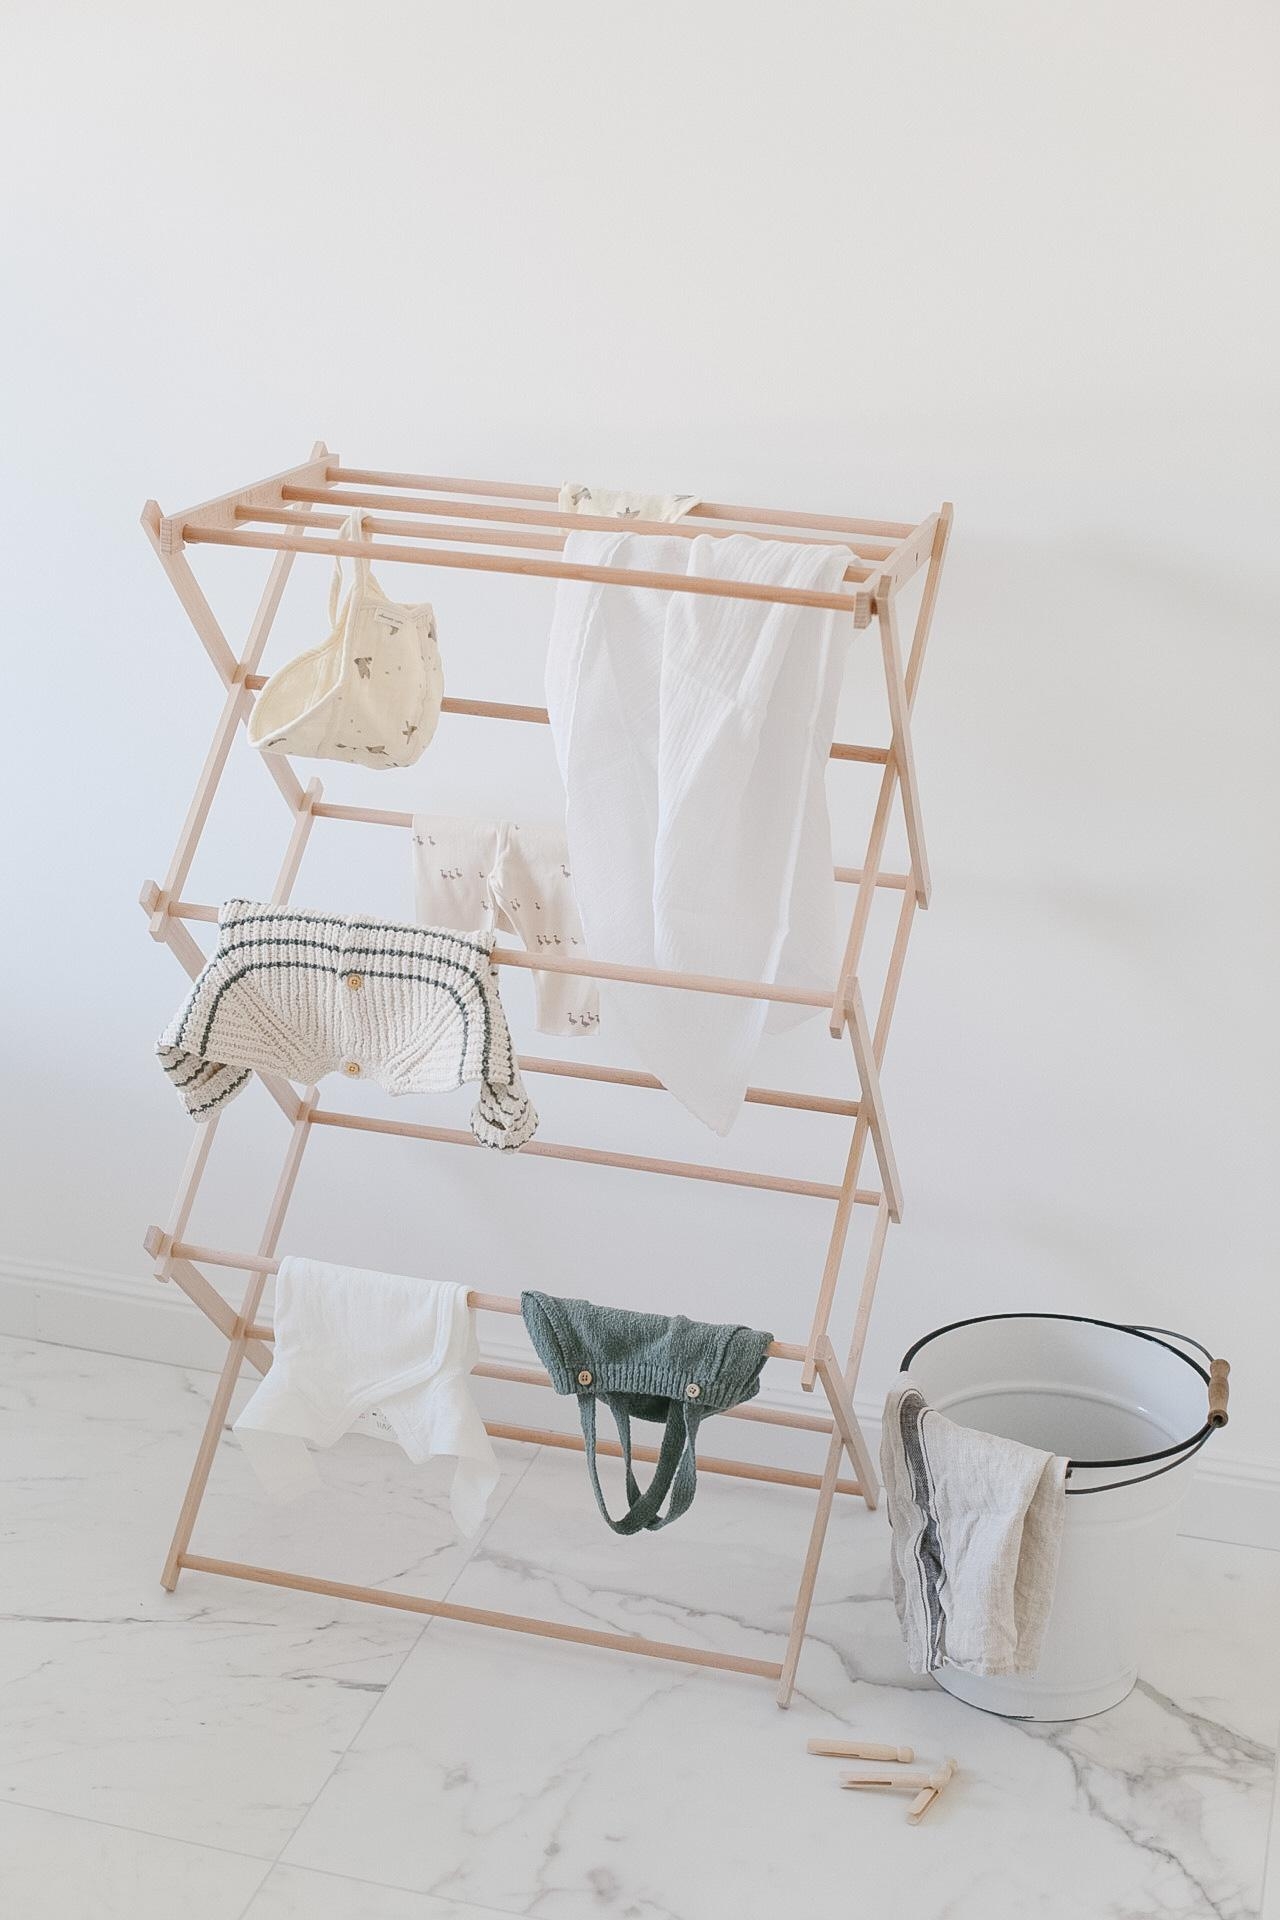 Da macht Wäsche aufhängen Spaß🙈
#wäscheständer #ikea #laundry